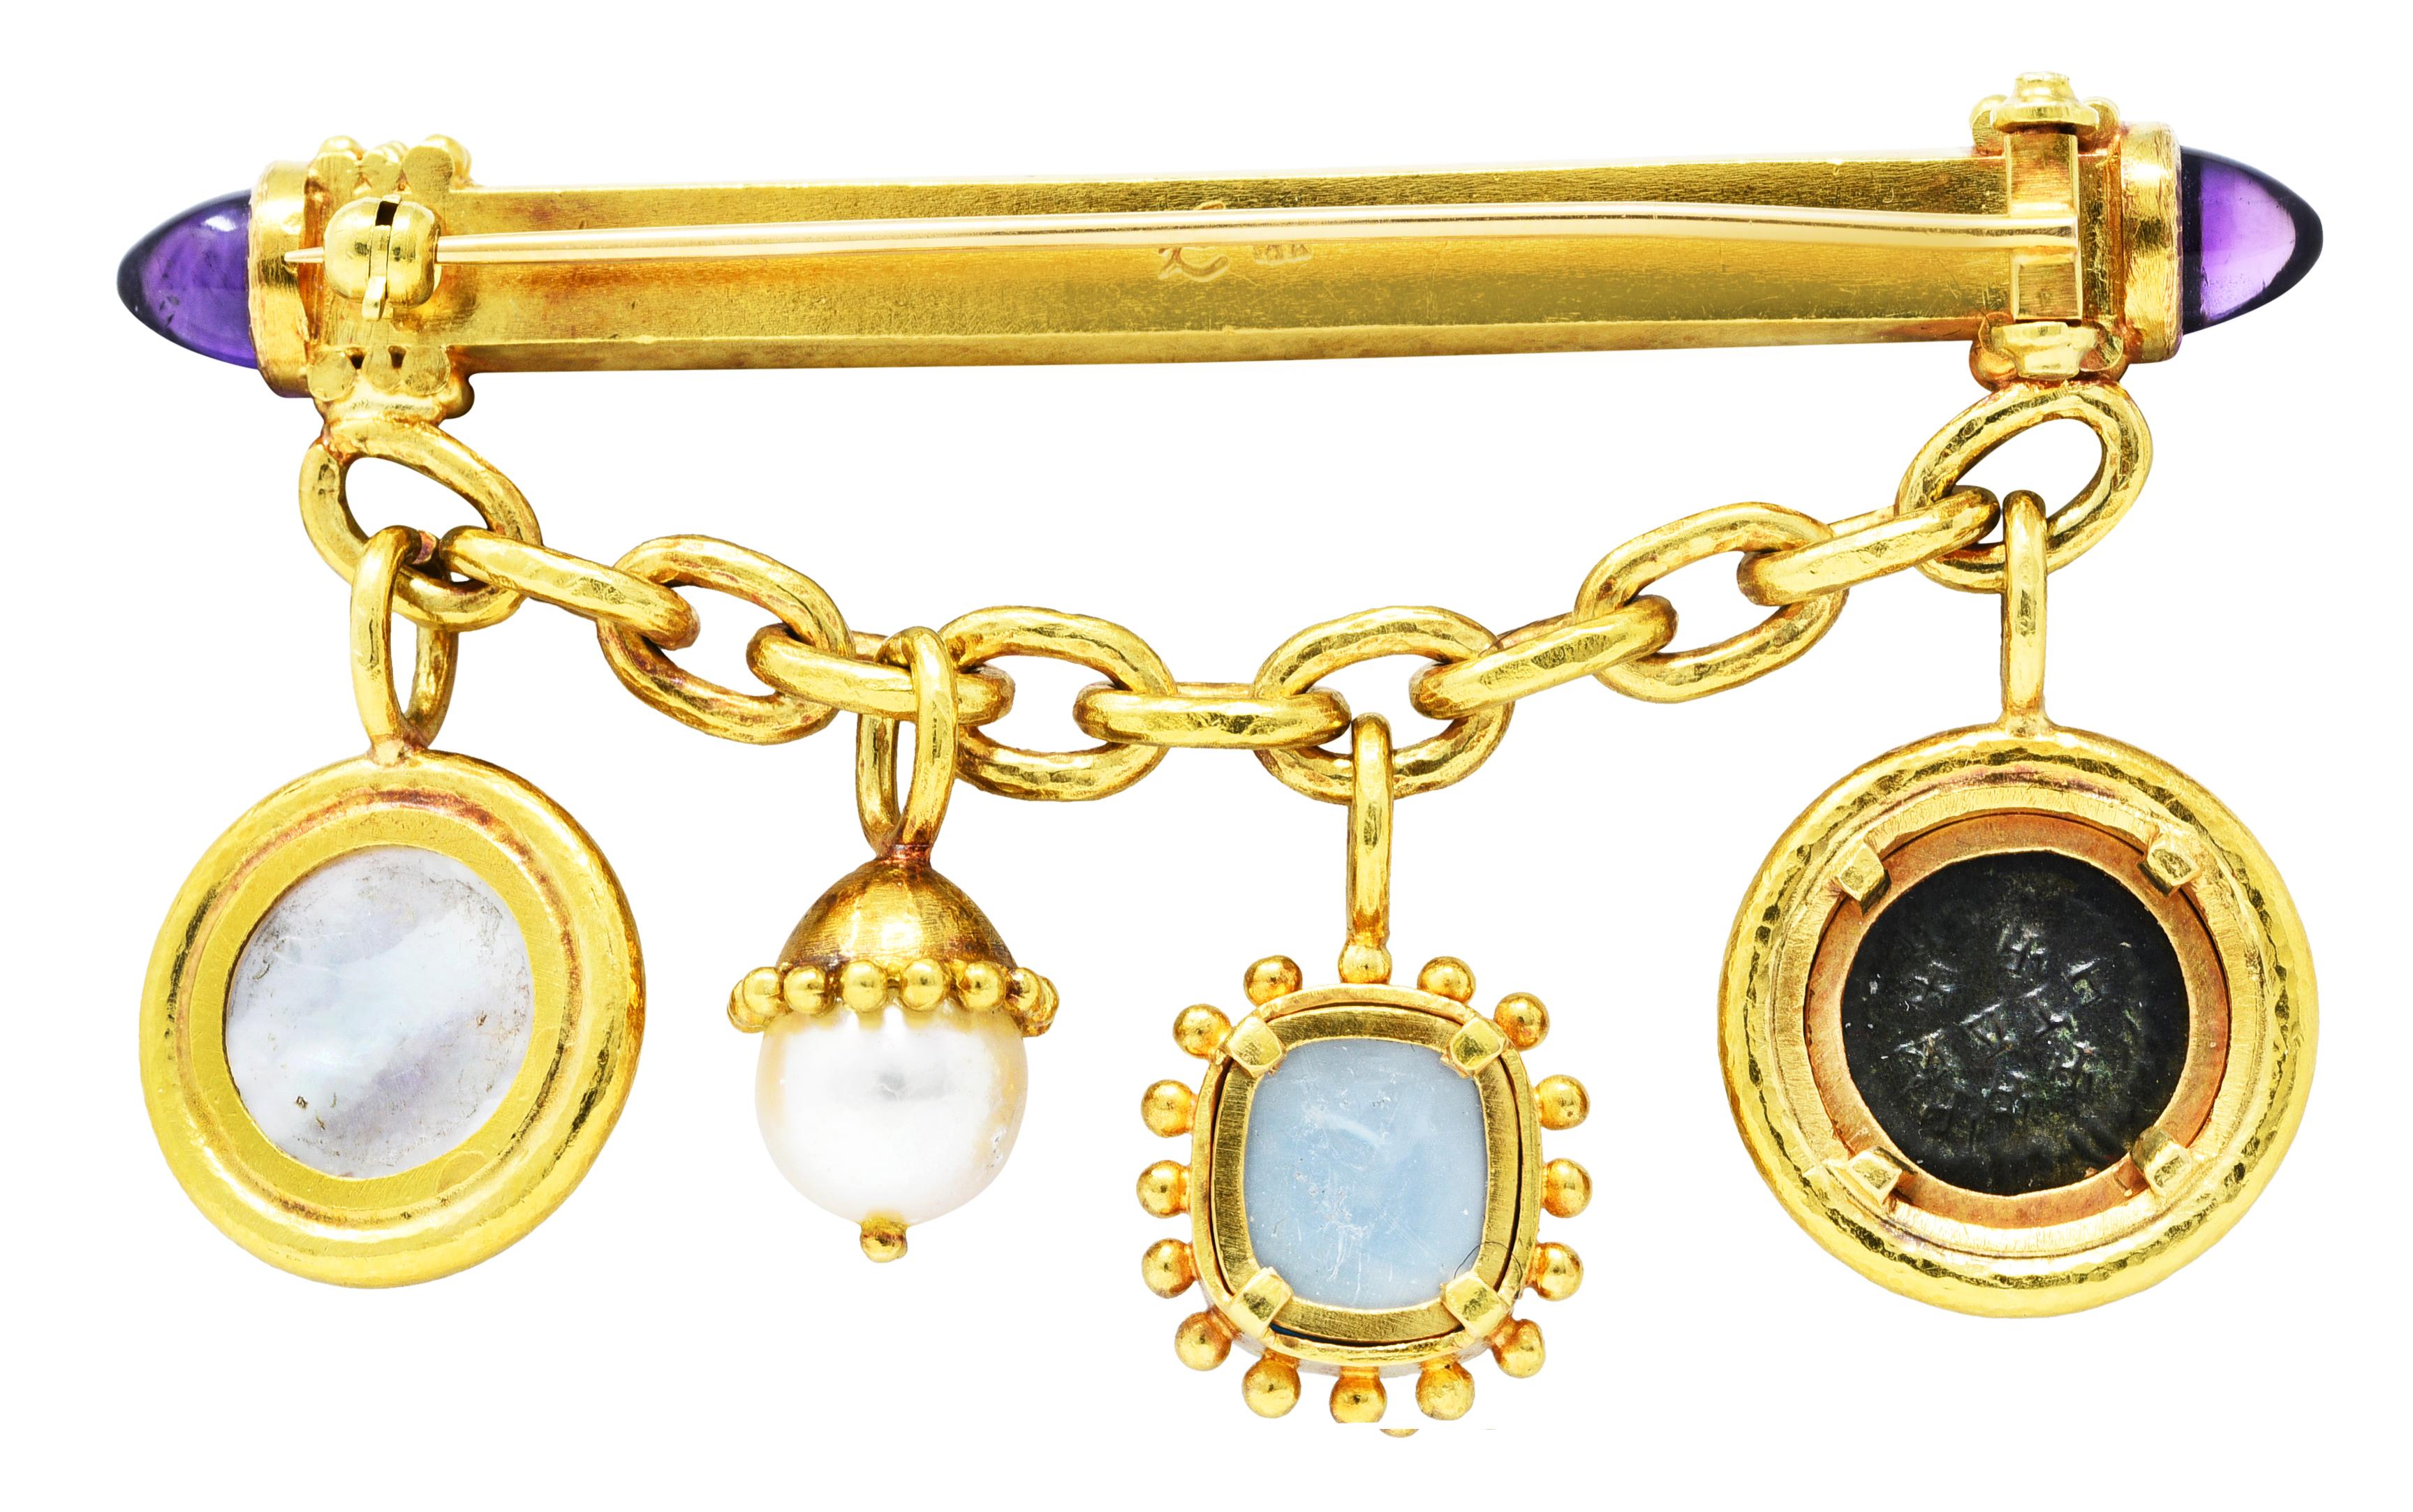 Contemporary Elizabeth Locke Amethyst Pearl 18 Karat Gold Swagged Charm Bar Brooch